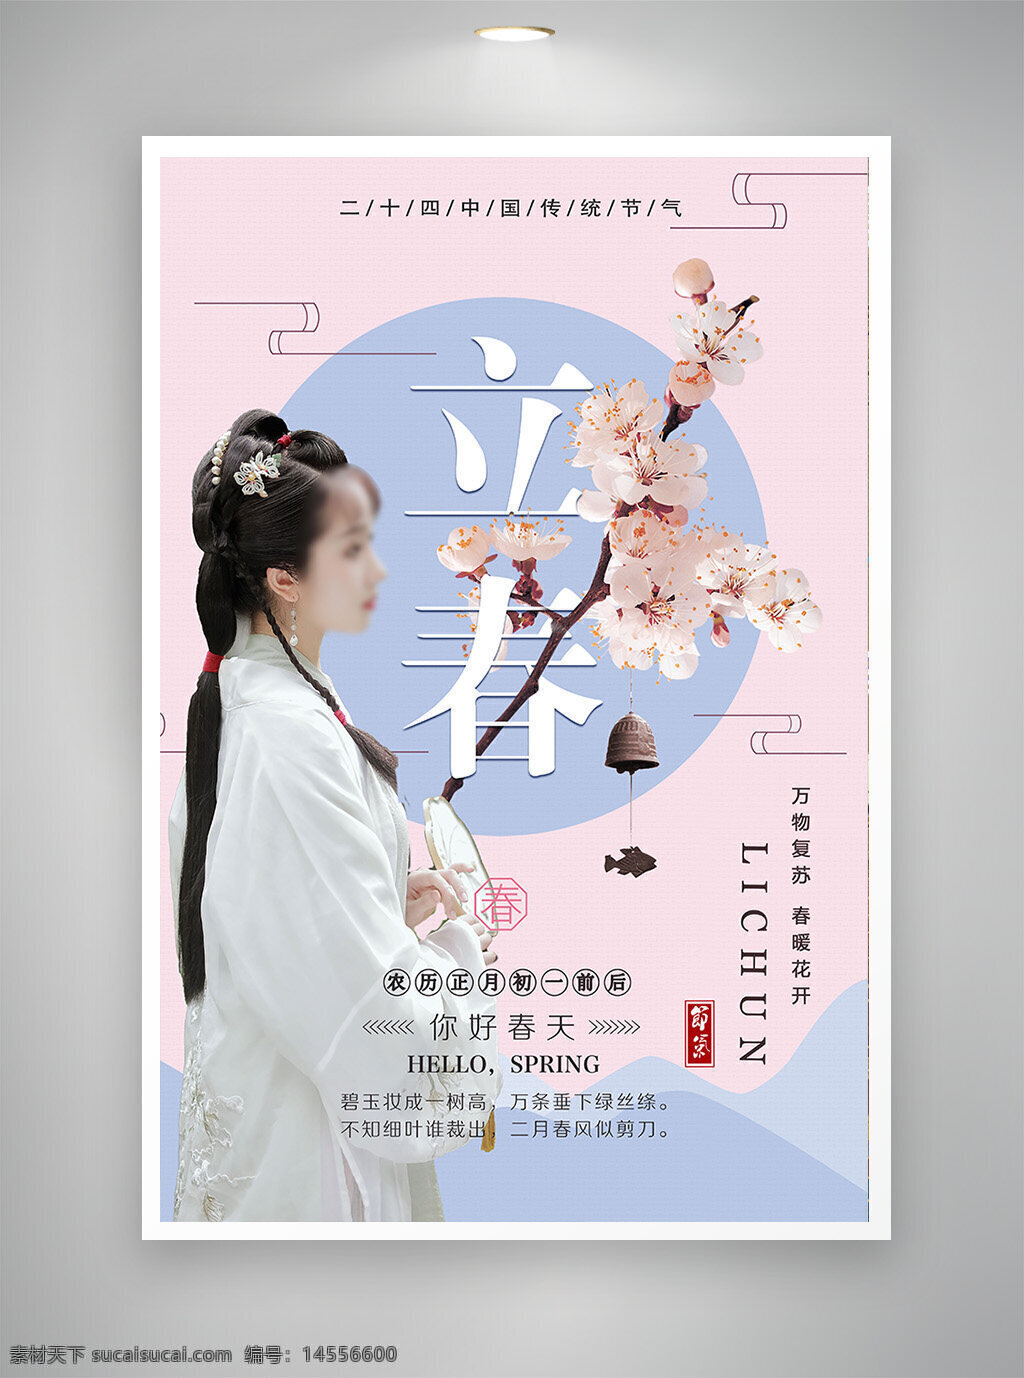 中国风海报 古风海报 促销海报 节日海报 立春海报